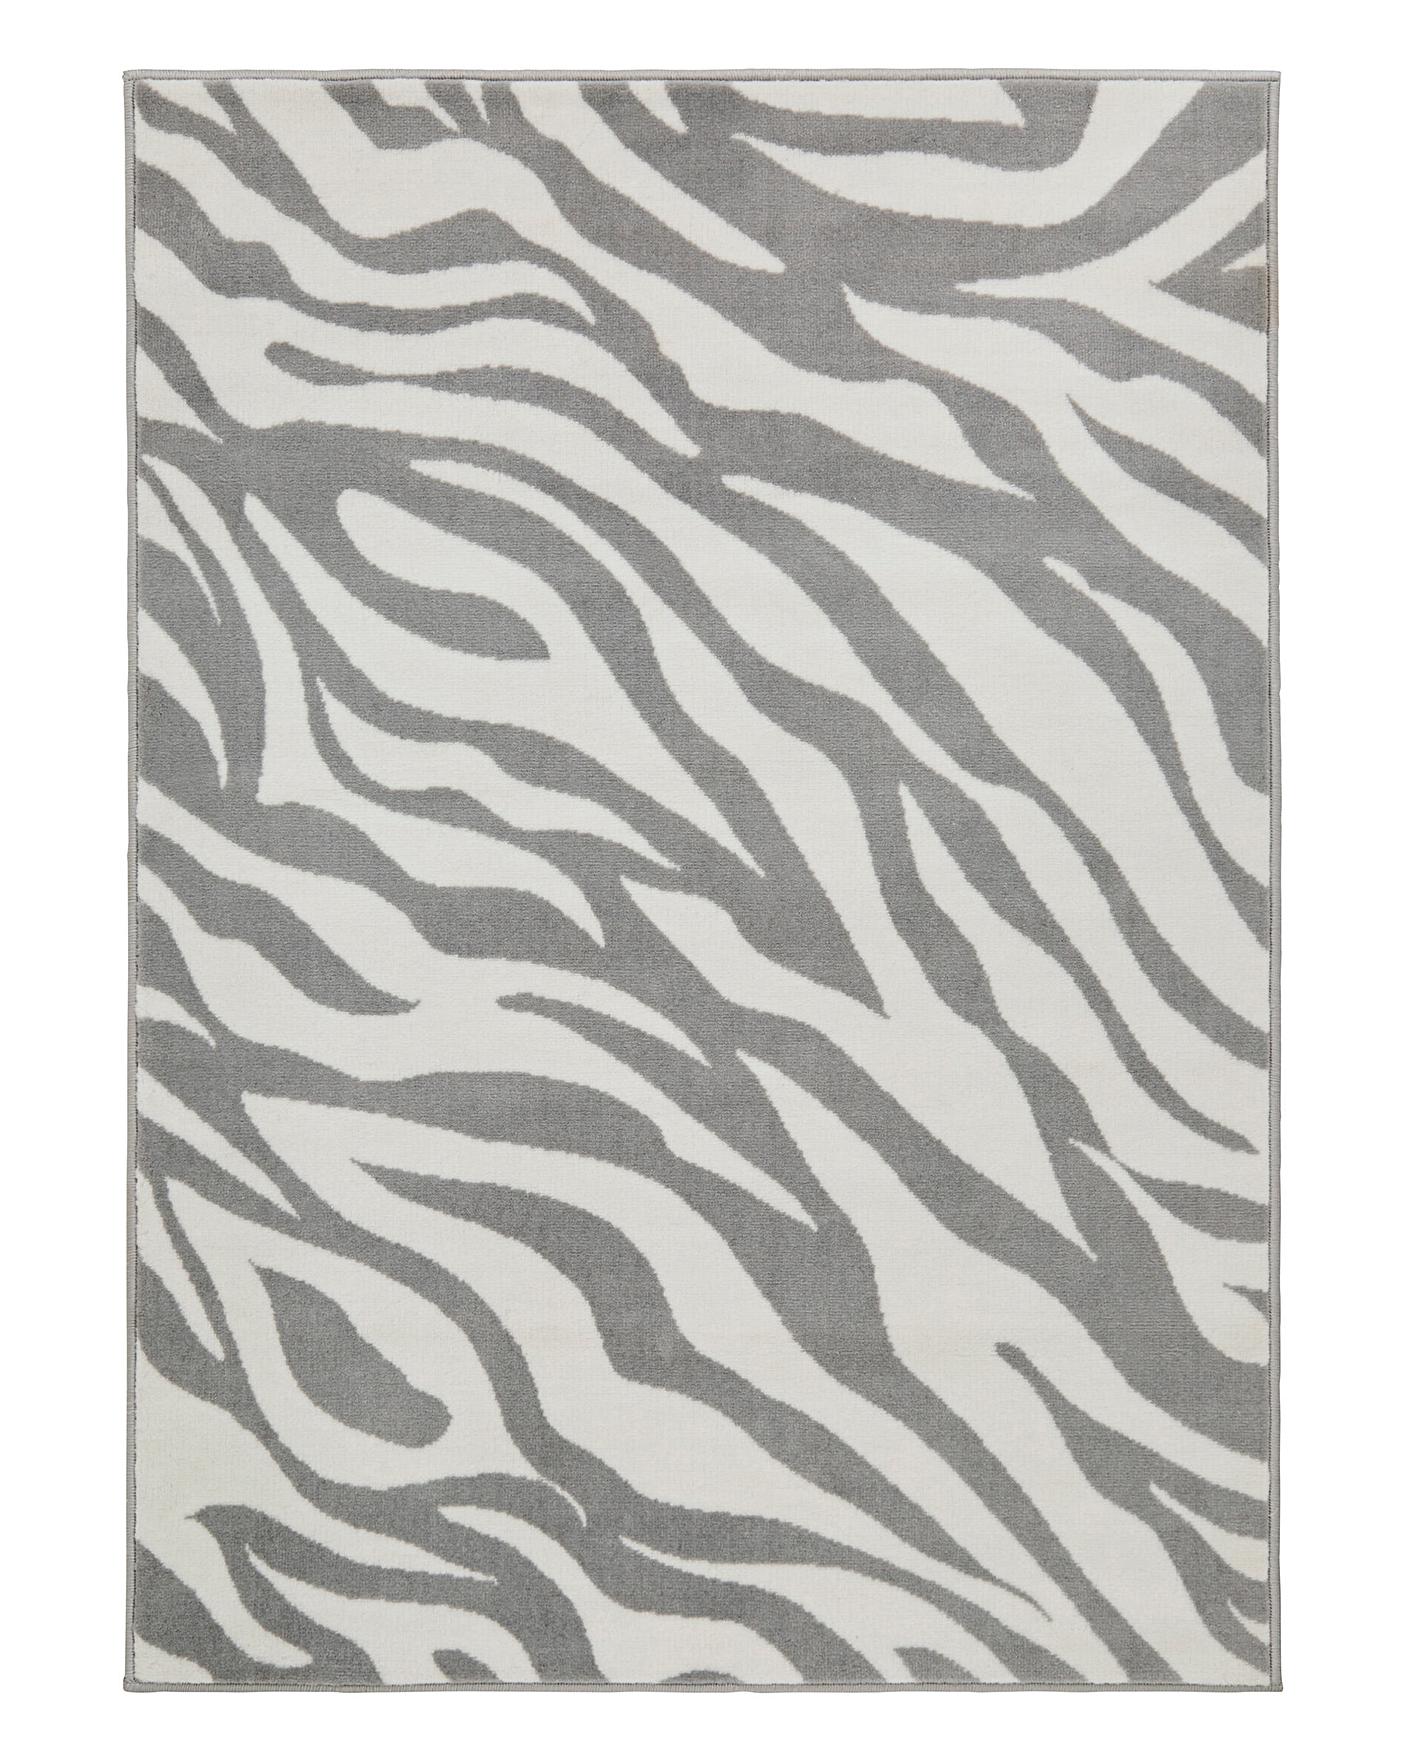 Zebra Print Rug J D Williams, Grey Zebra Rug